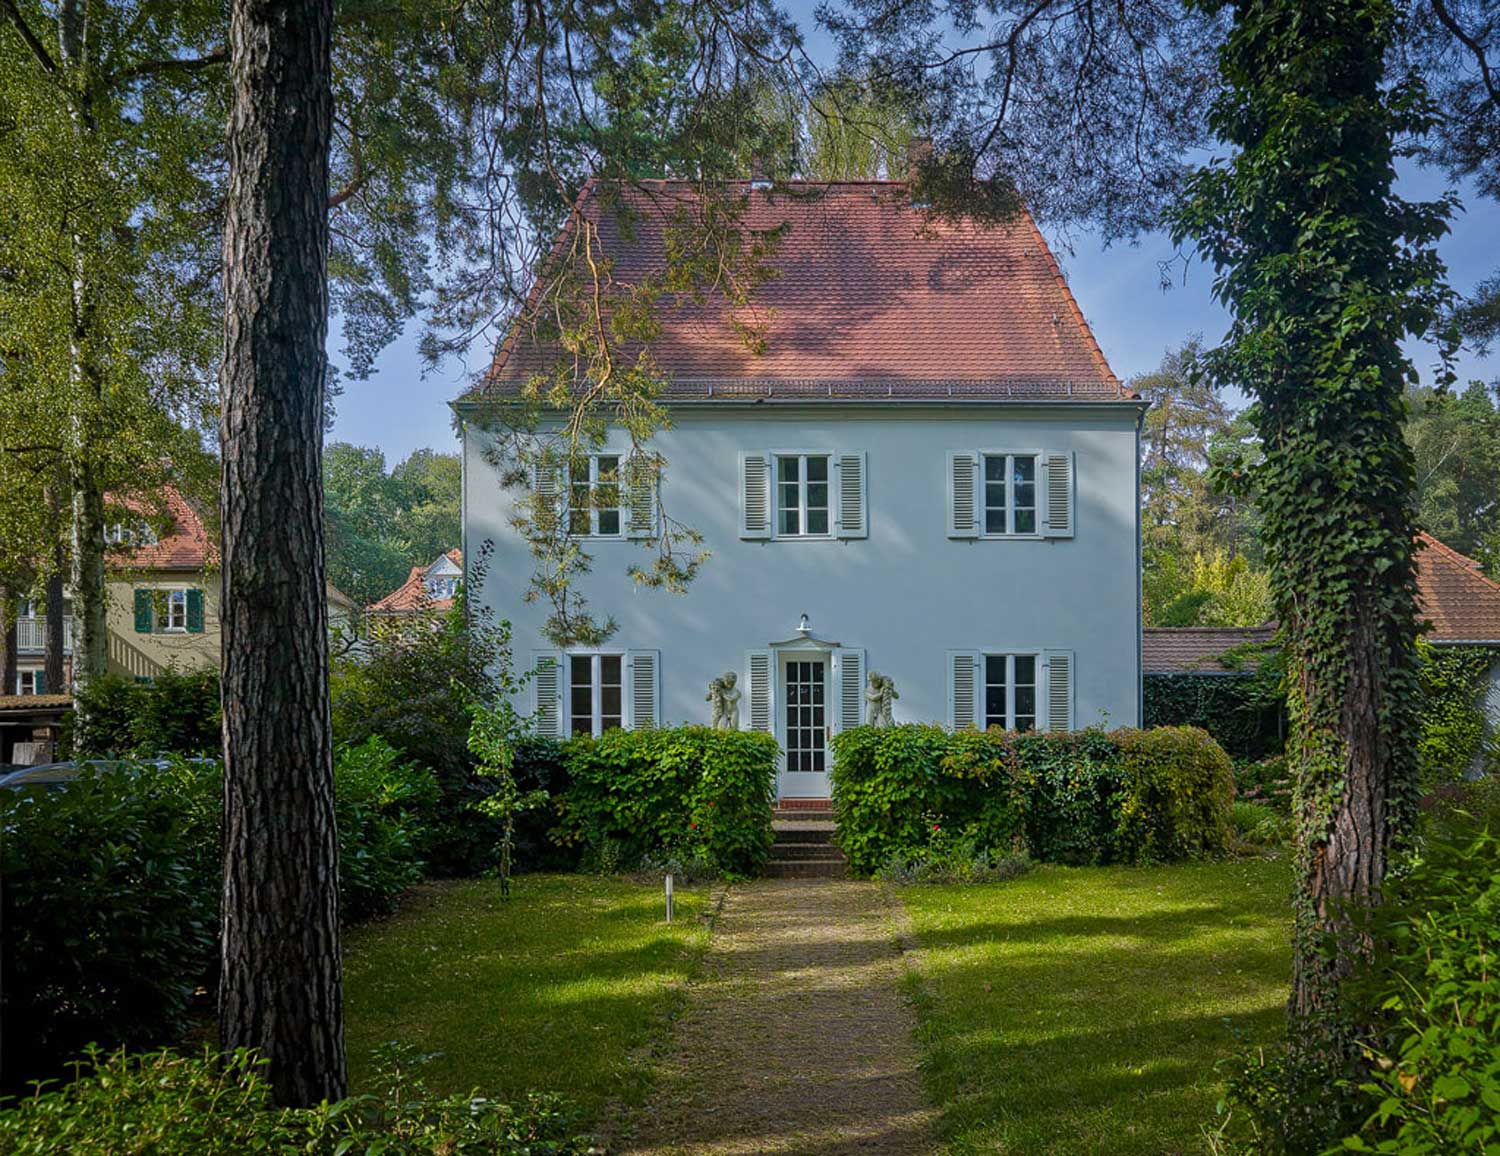 Foto, farbig, außen: Ein weißgestrichenes Haus mit Trapezdach, auf das ein Gartenweg hinführt, links und rechts ein belaubter Baum.